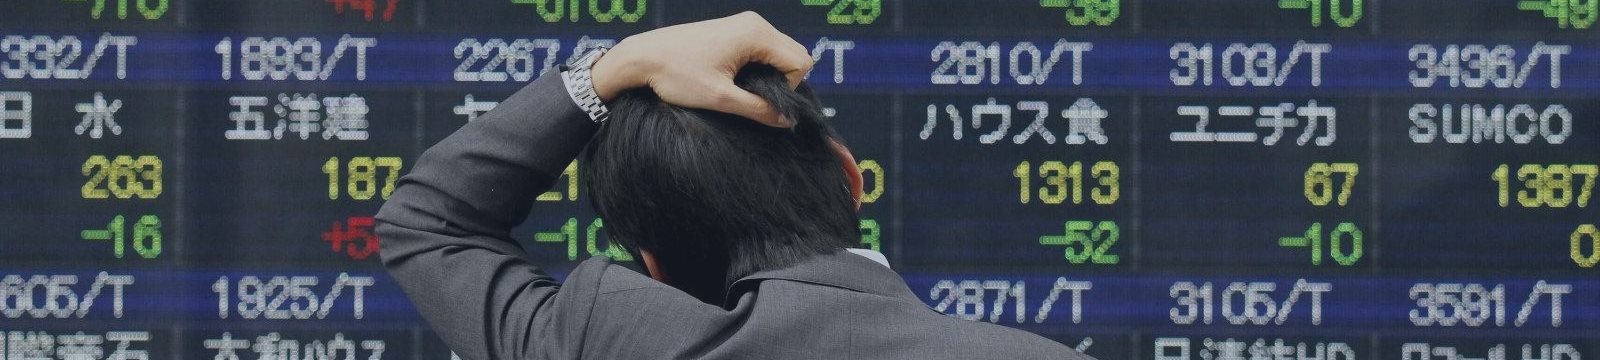 Азиатские биржи не проявили единой динамики